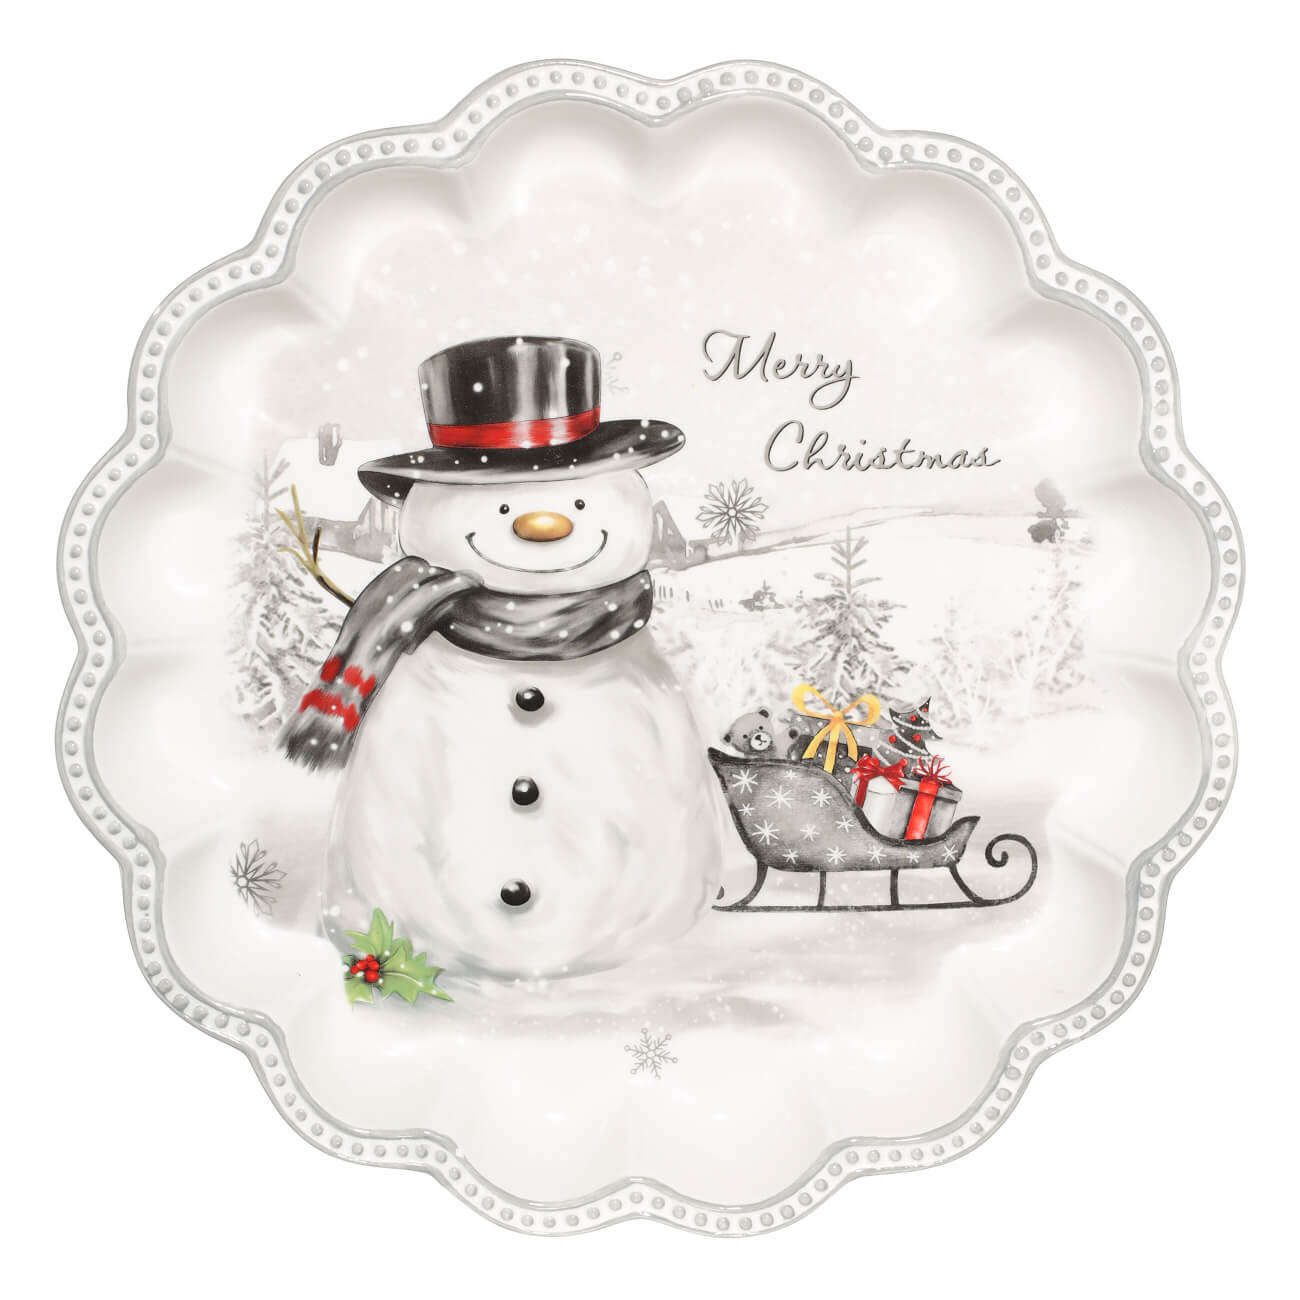 Блюдо, 31х4 см, керамика, белое, Снеговик в шляпе, Friendly snowman